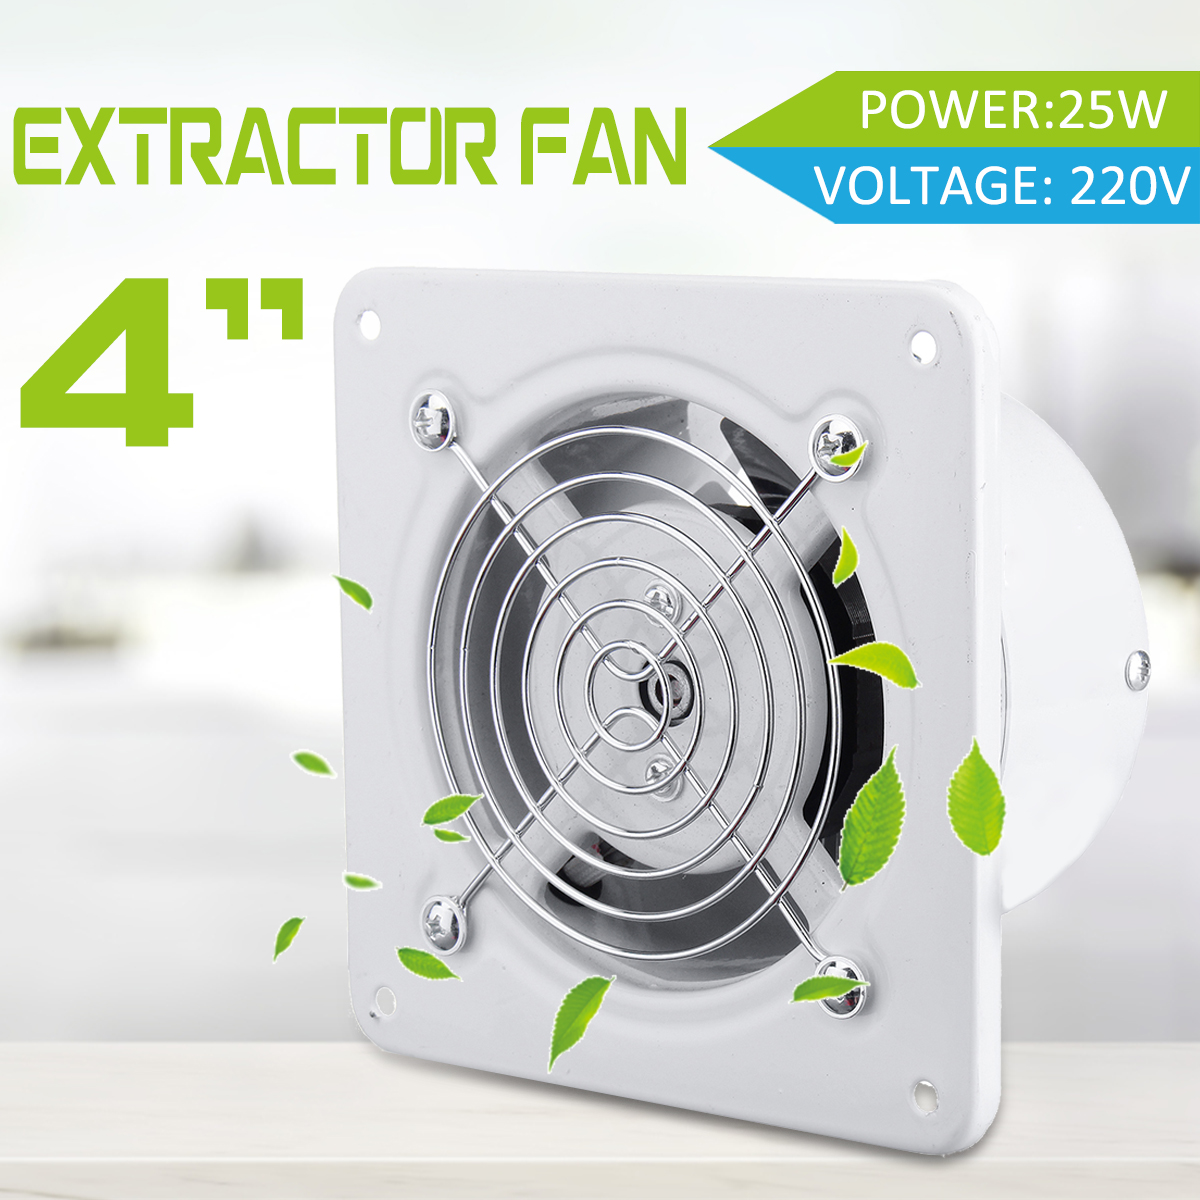 Вентилятор в туалет купить. Extractor Fan 100 вентилятор бесшумный. Вентилятор вытяжной Extractor Fan черный. Вентилятор Extractor Fan потолочный. Extractor Fan вентилятор сверхтонкий.